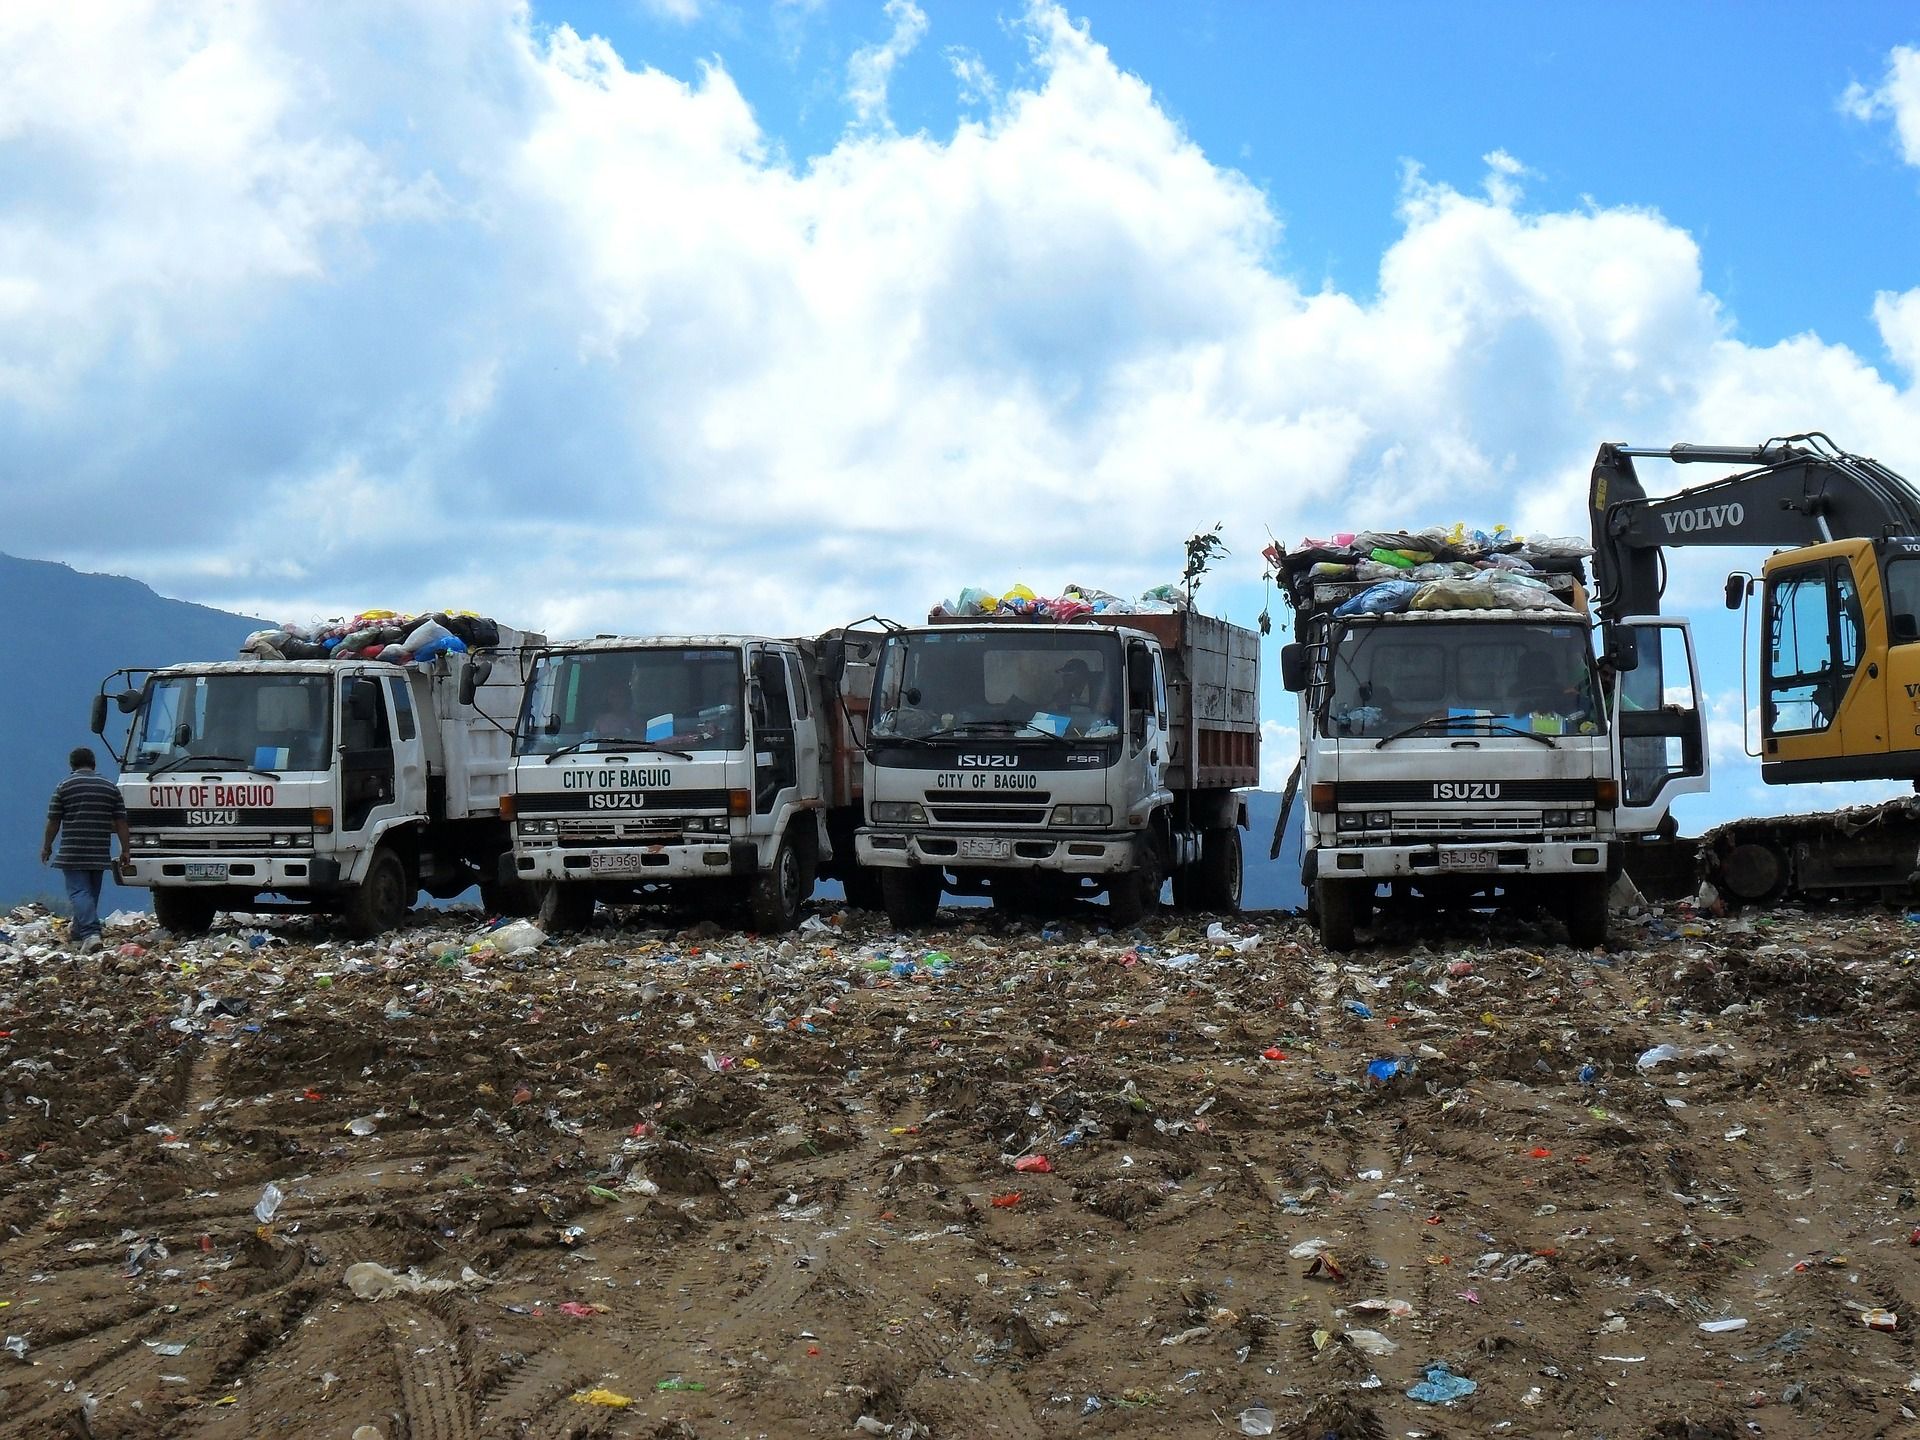 Encontrar lugares donde poder acumular residuos para vertederos es complicado / Foto: Pixabay